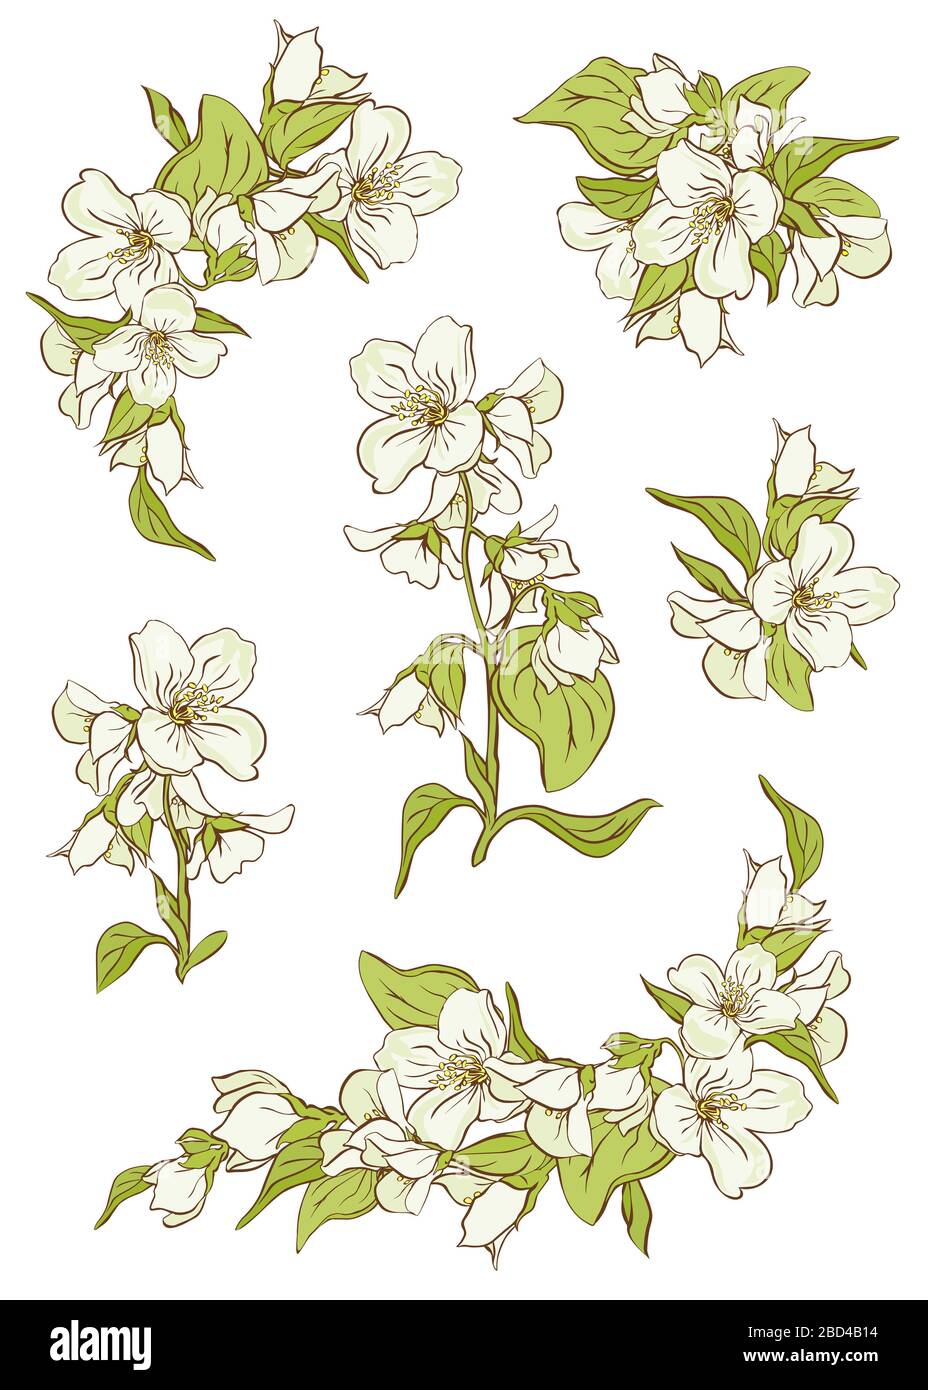 Ilustración de una rama de jazmín con flores blancas, hojas y yemas. Una  rama de jazmín floreciente con brotes y hojas verdes Fotografía de stock -  Alamy